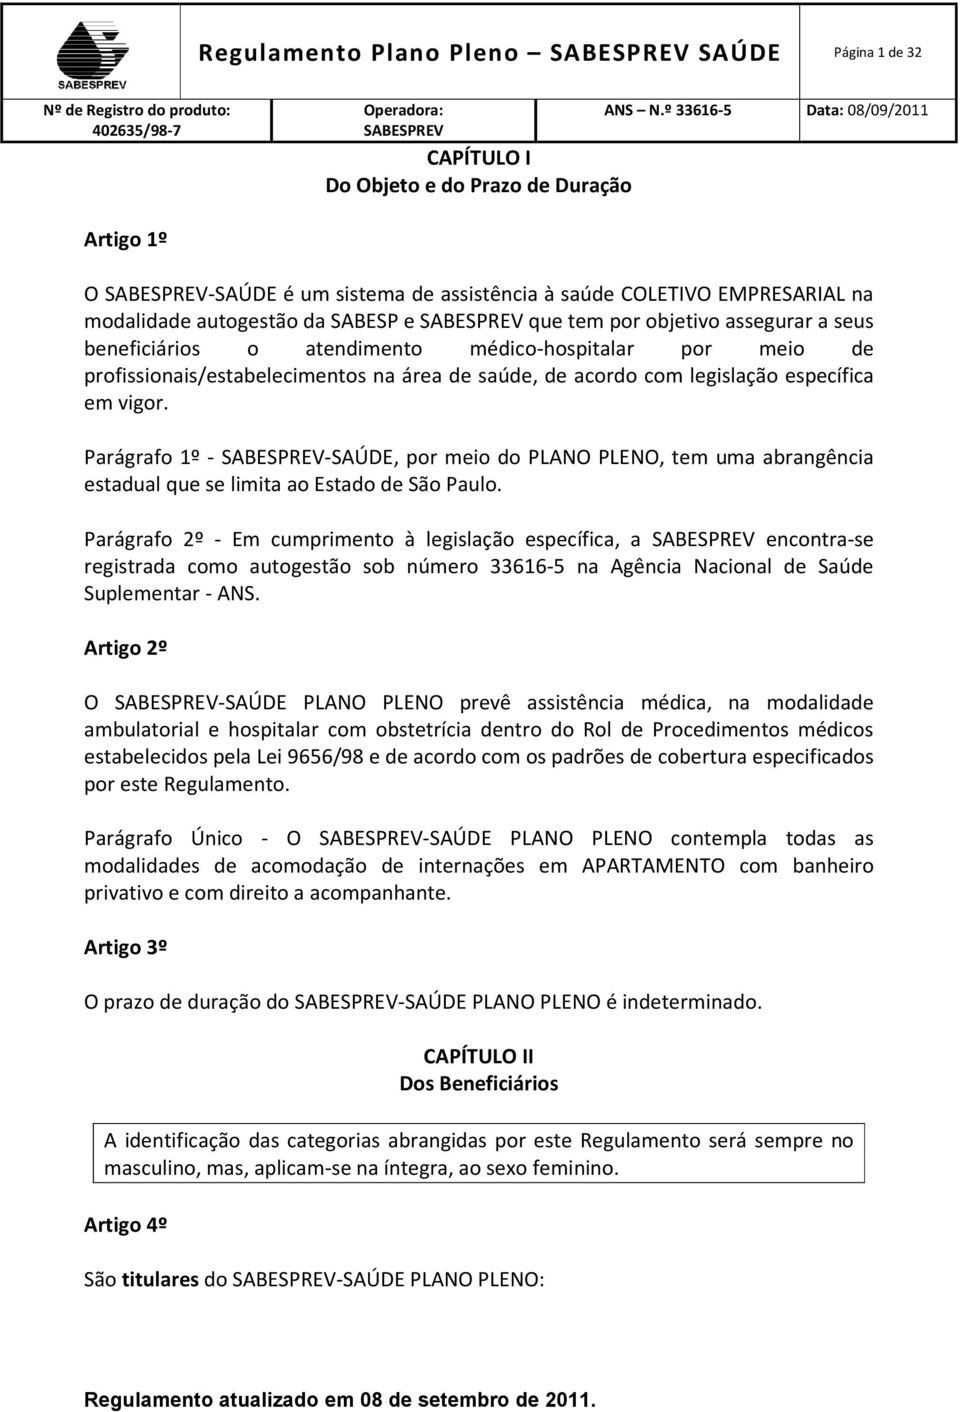 Parágrafo 1º - -SAÚDE, por meio do PLANO PLENO, tem uma abrangência estadual que se limita ao Estado de São Paulo.